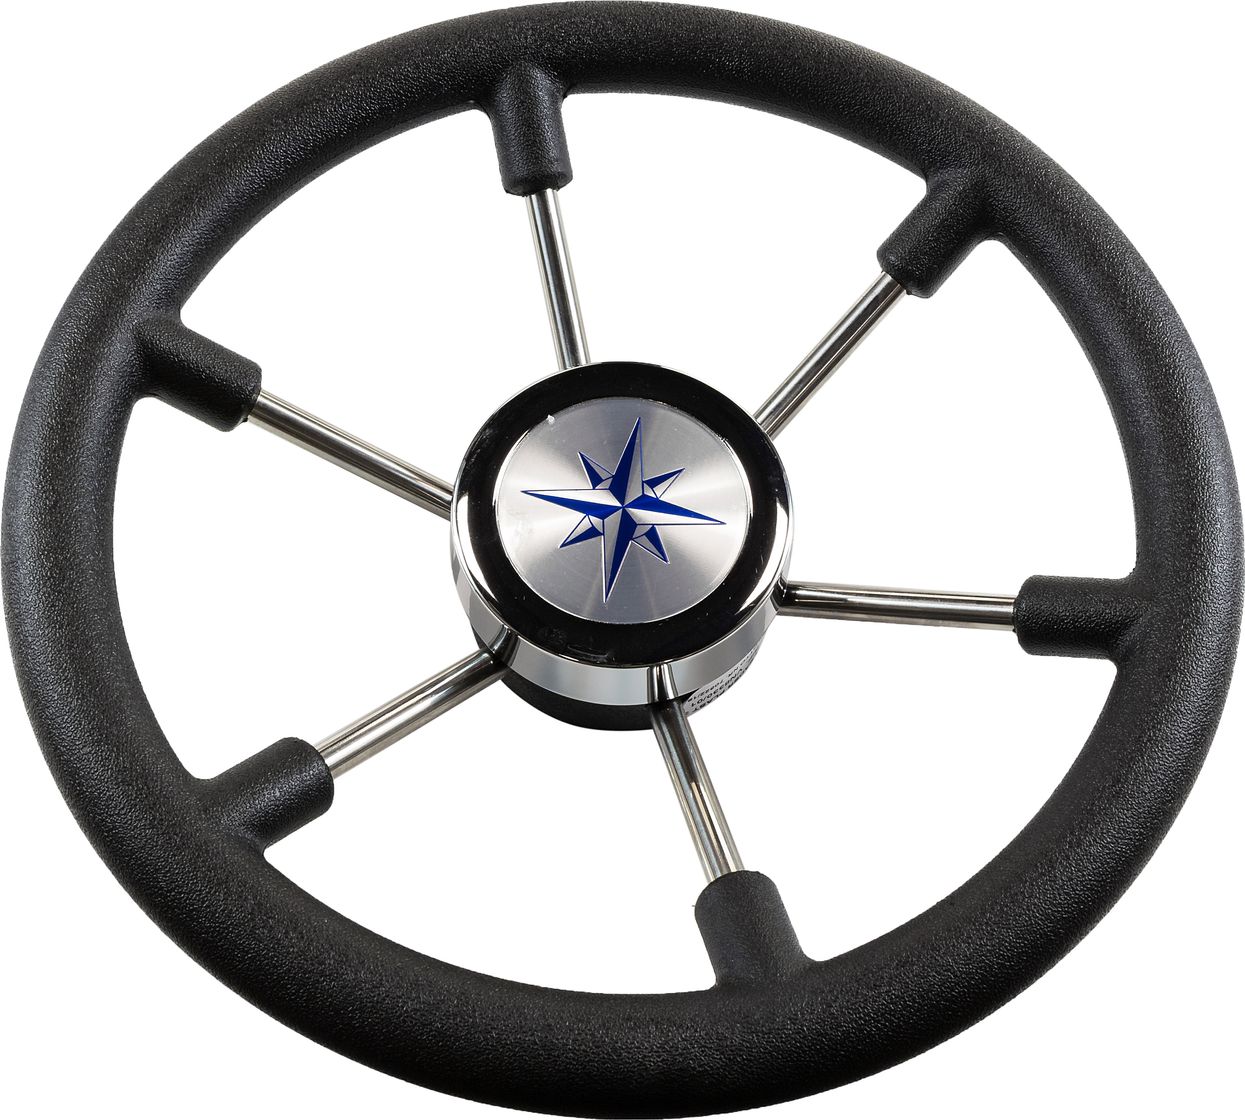 Рулевое колесо LEADER PLAST черный обод серебряные спицы д. 330 мм VN8330-01 рулевое колесо delfino обод спицы серебряные д 340 мм vn70401 01